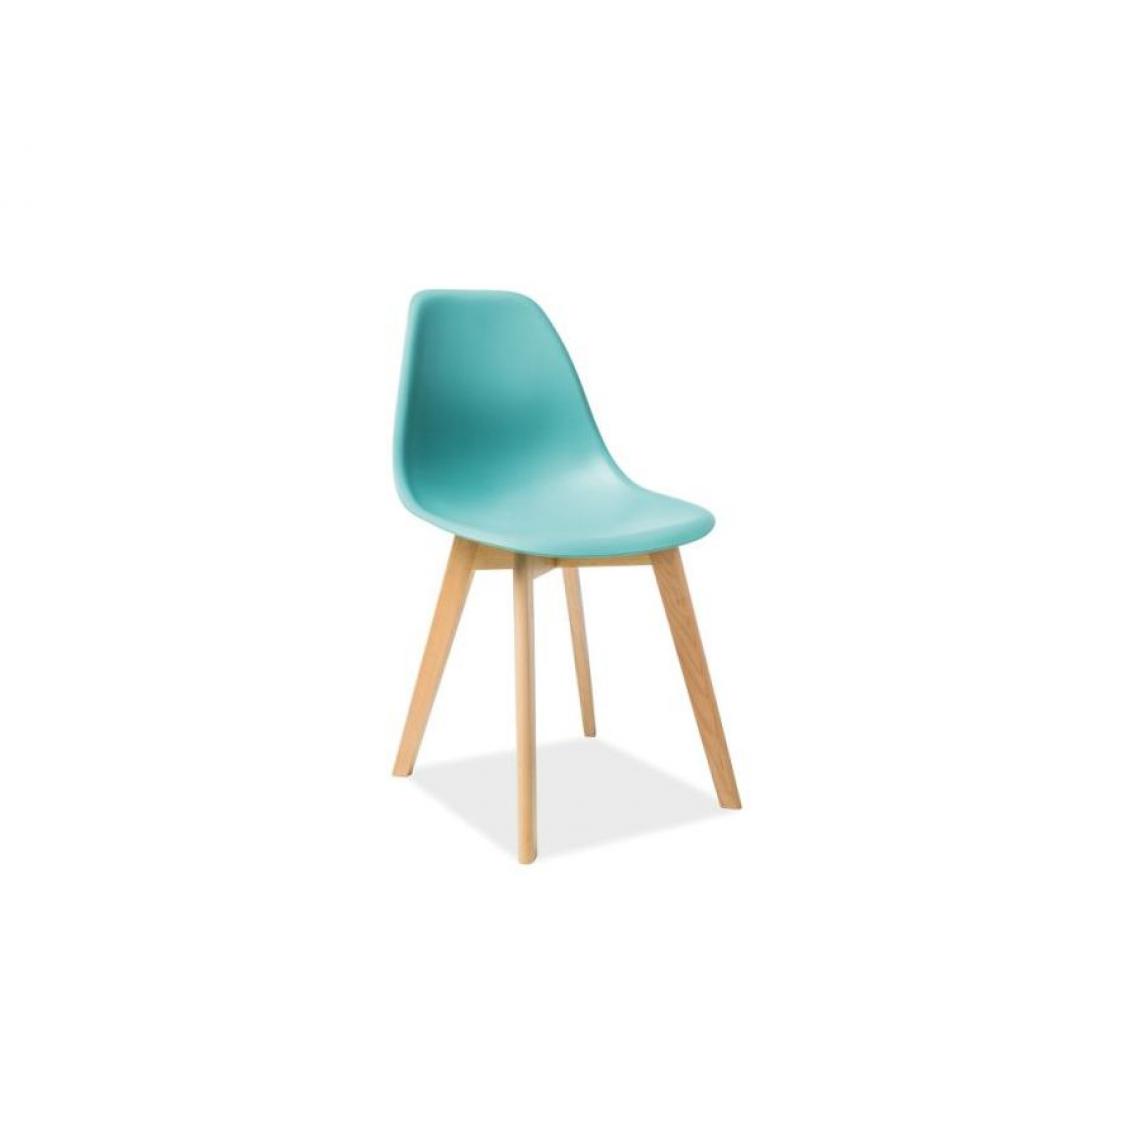 Hucoco - MORIT | Chaise en plastique style scandinave salle à manger bureau | 85x46x38 cm | Dossier + assise polypropylène | Base en bois - Menthe - Chaises